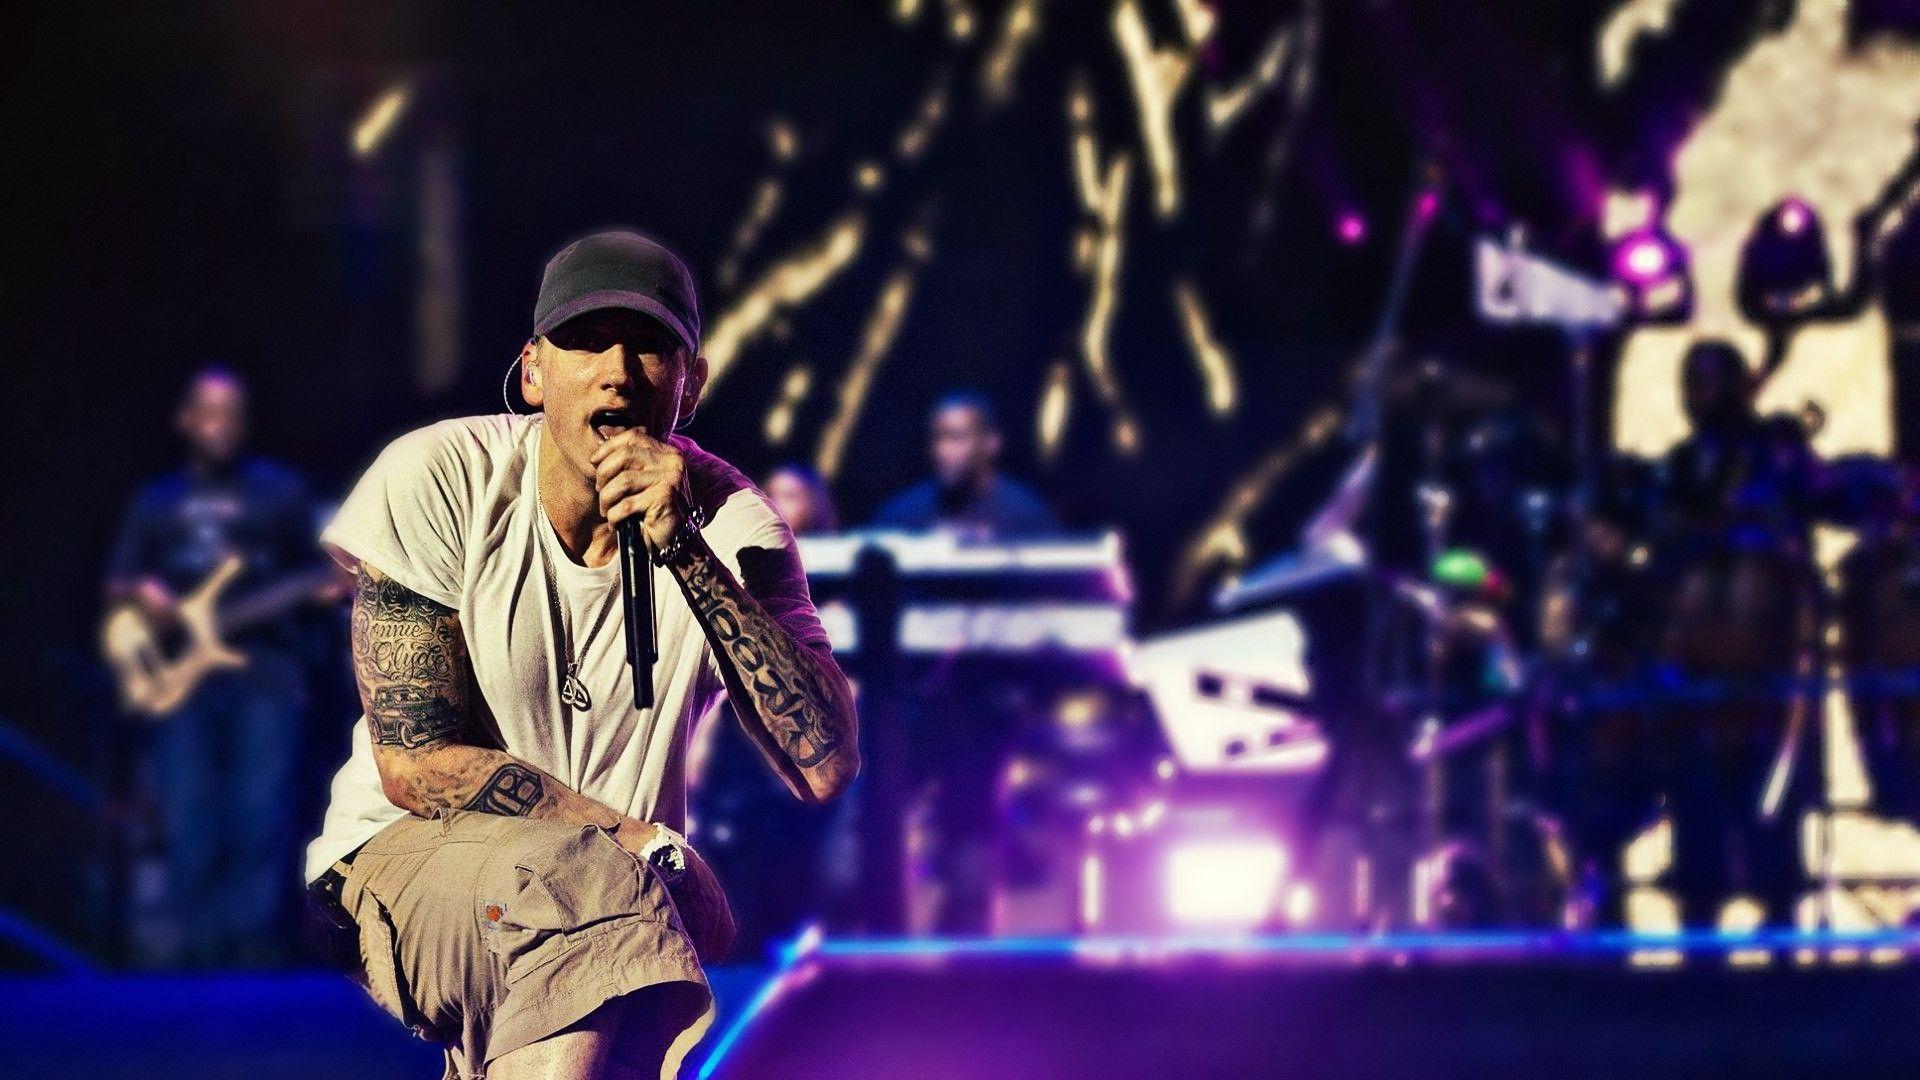 Eminem On Stage, HD Music, 4k Wallpaper, Image, Background